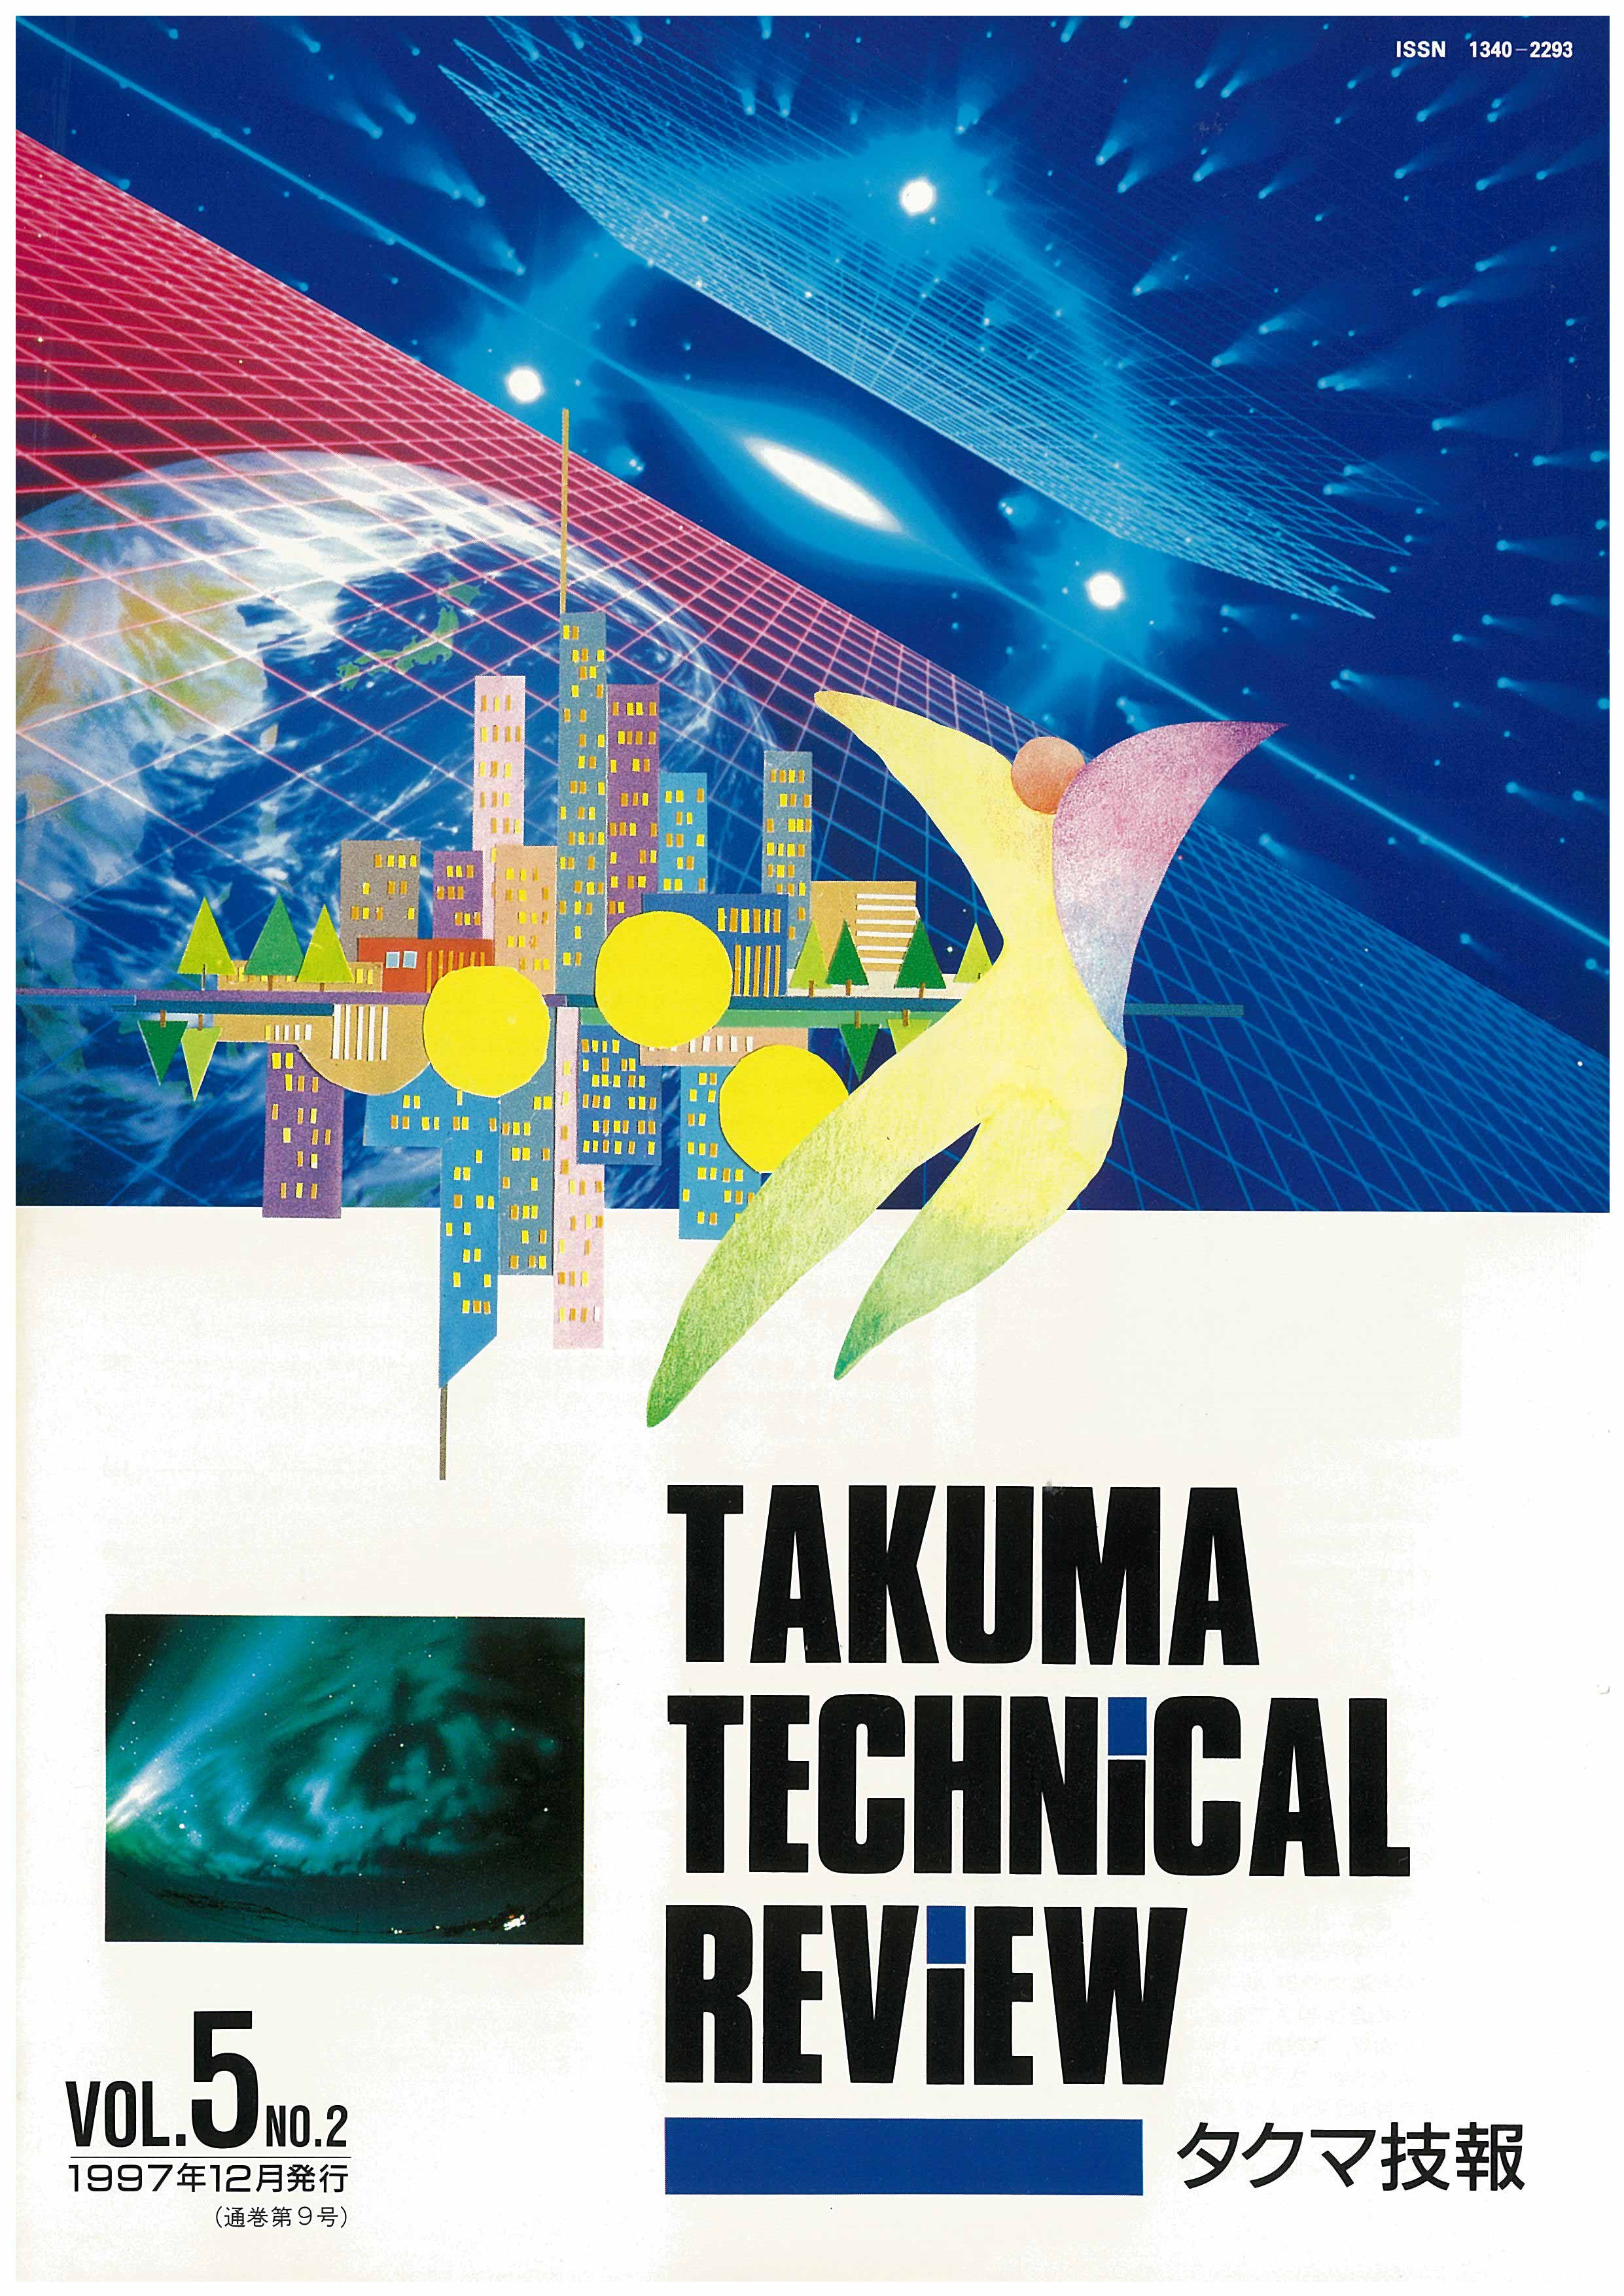 タクマ技報 VOL.5 NO.2（1997年12月発行）